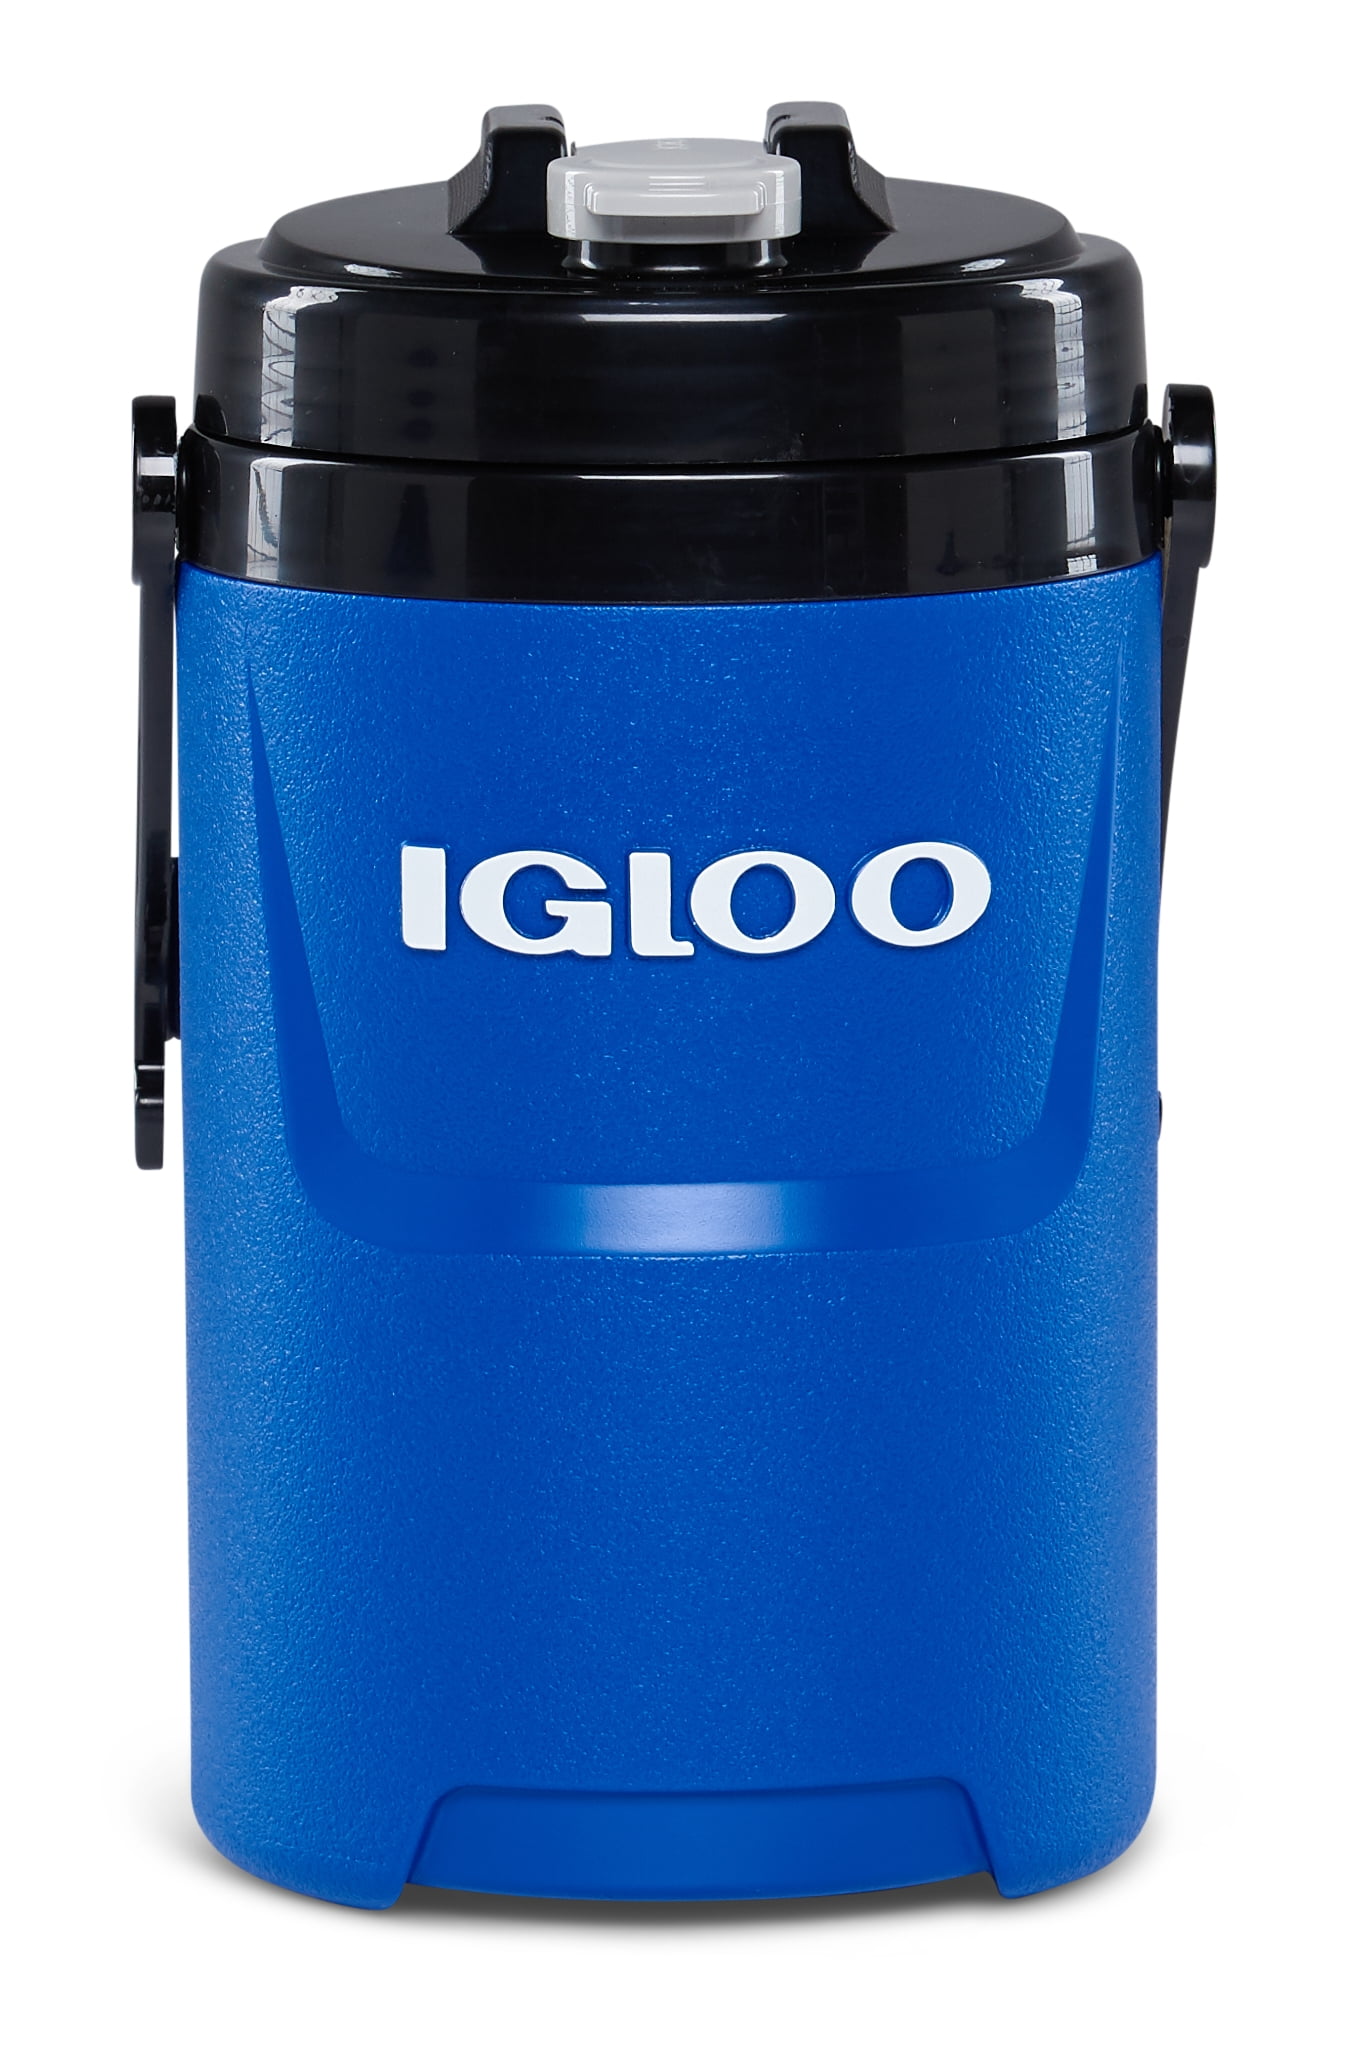 Igloo Latitude Pro Half-Gallon Beverage Jug